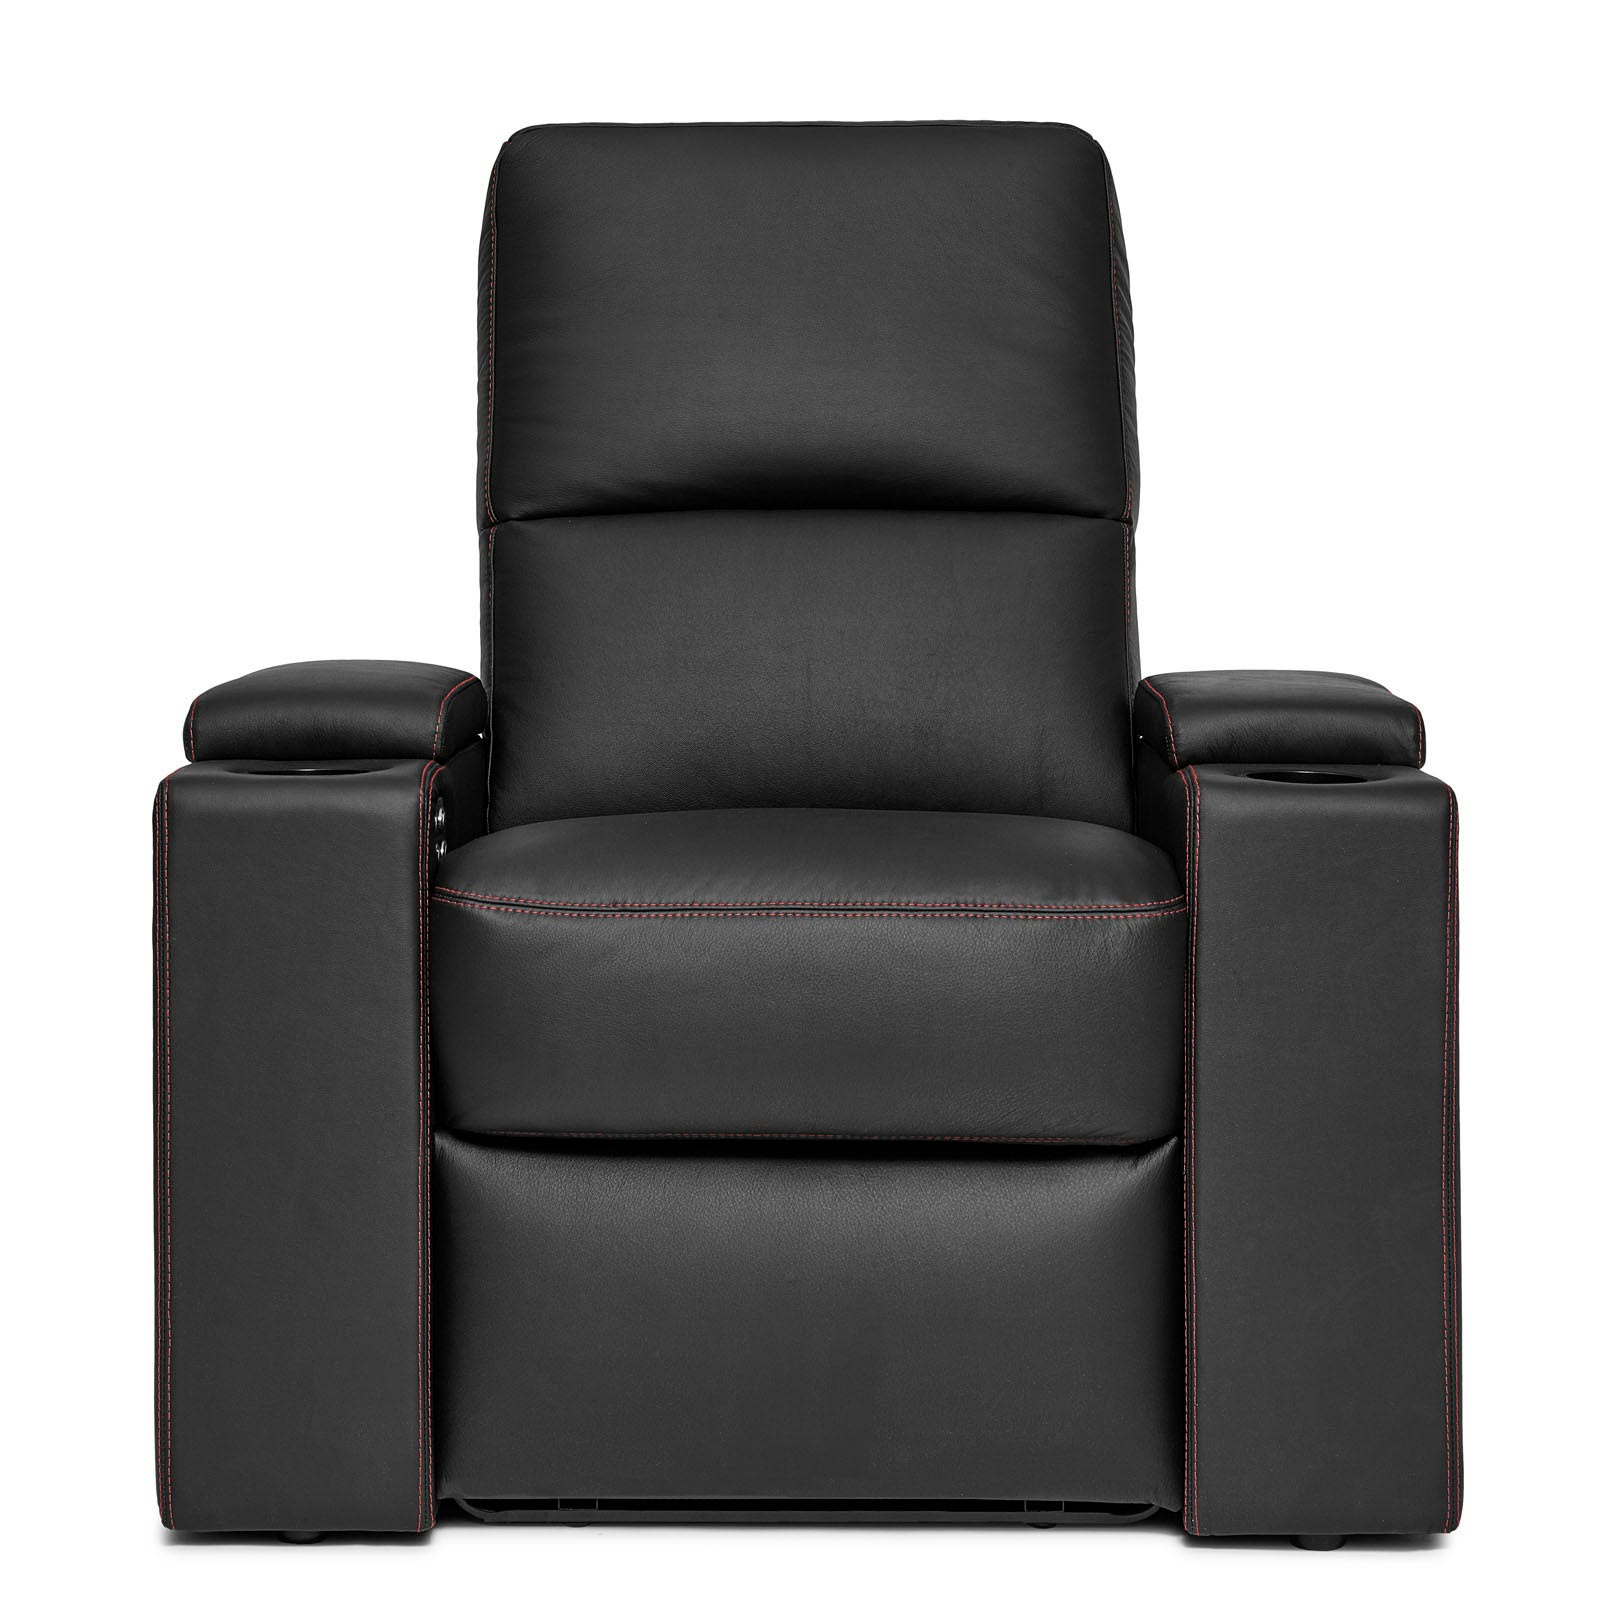 D Box кресла. Кресло удлиненное для ног. Кресло forum d. Удлиненное кресло